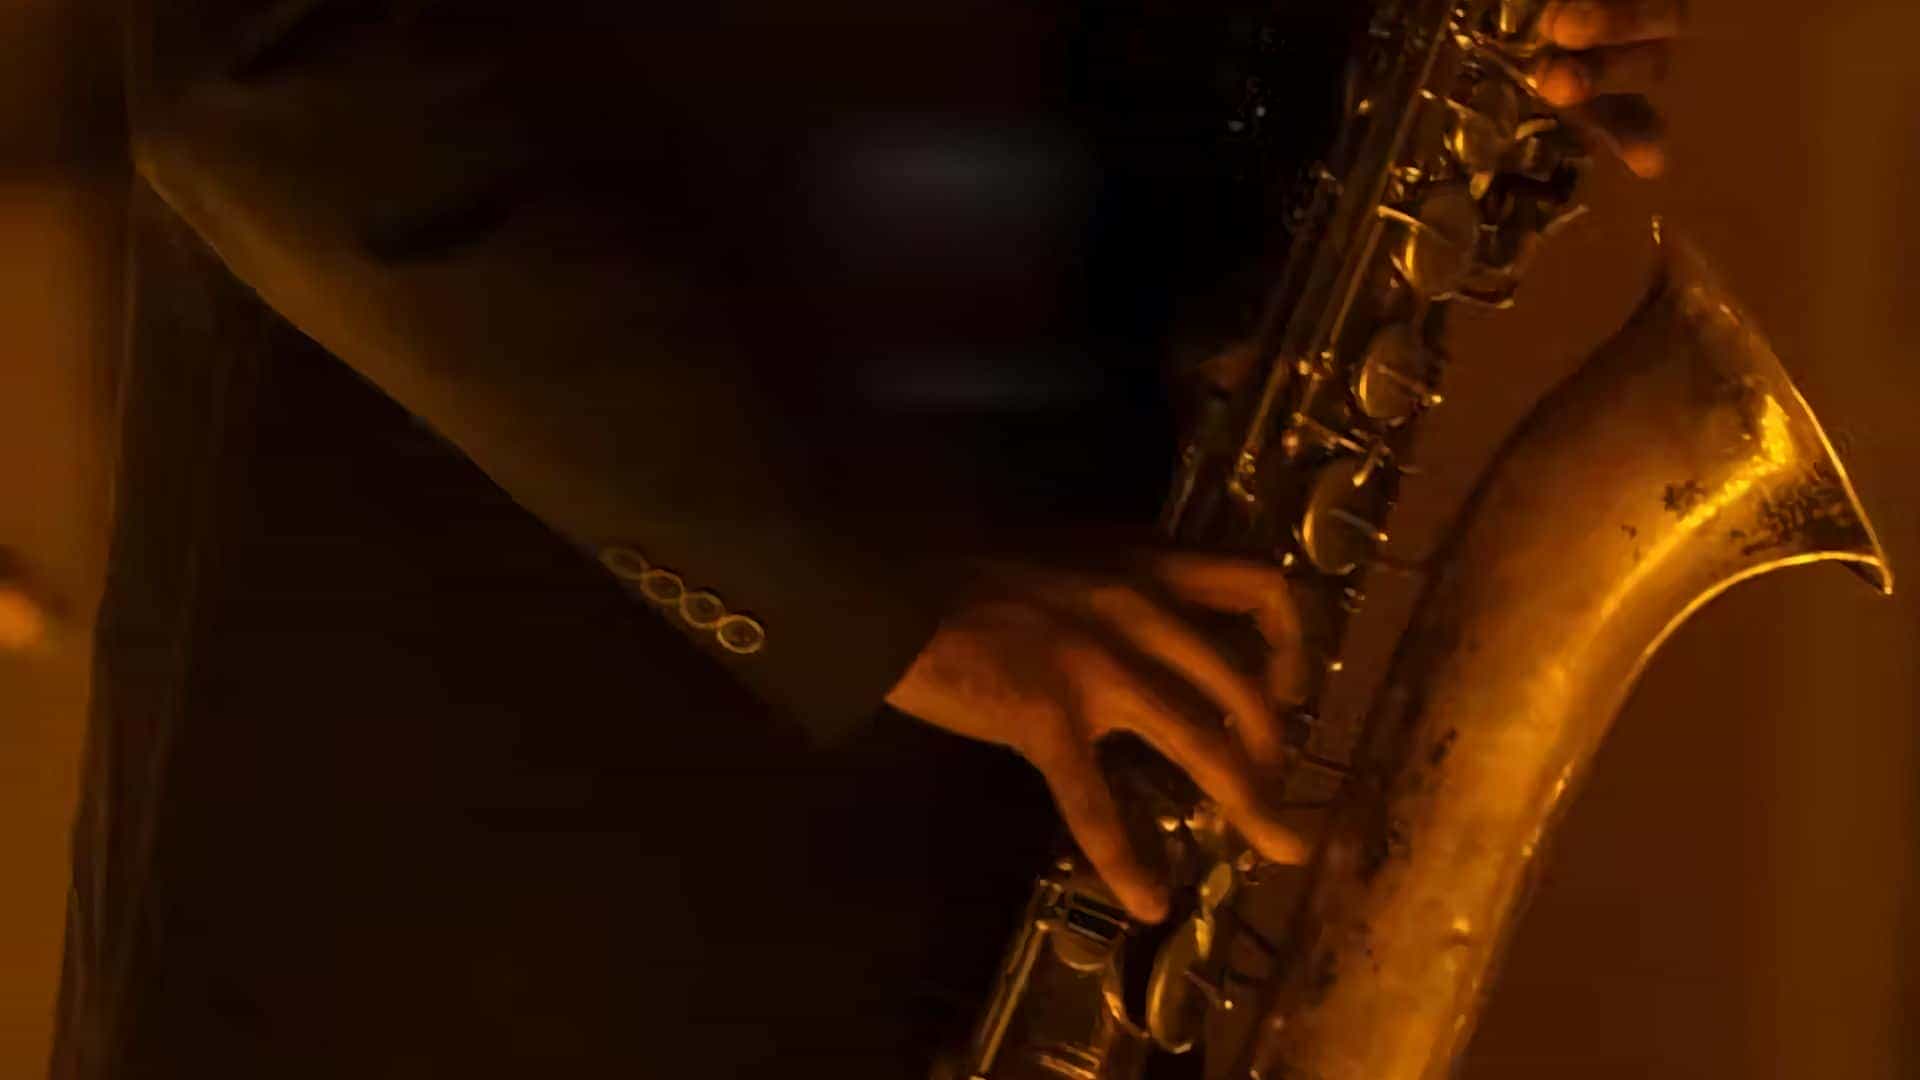 Candlelight Jazz: Movie Soundtracks